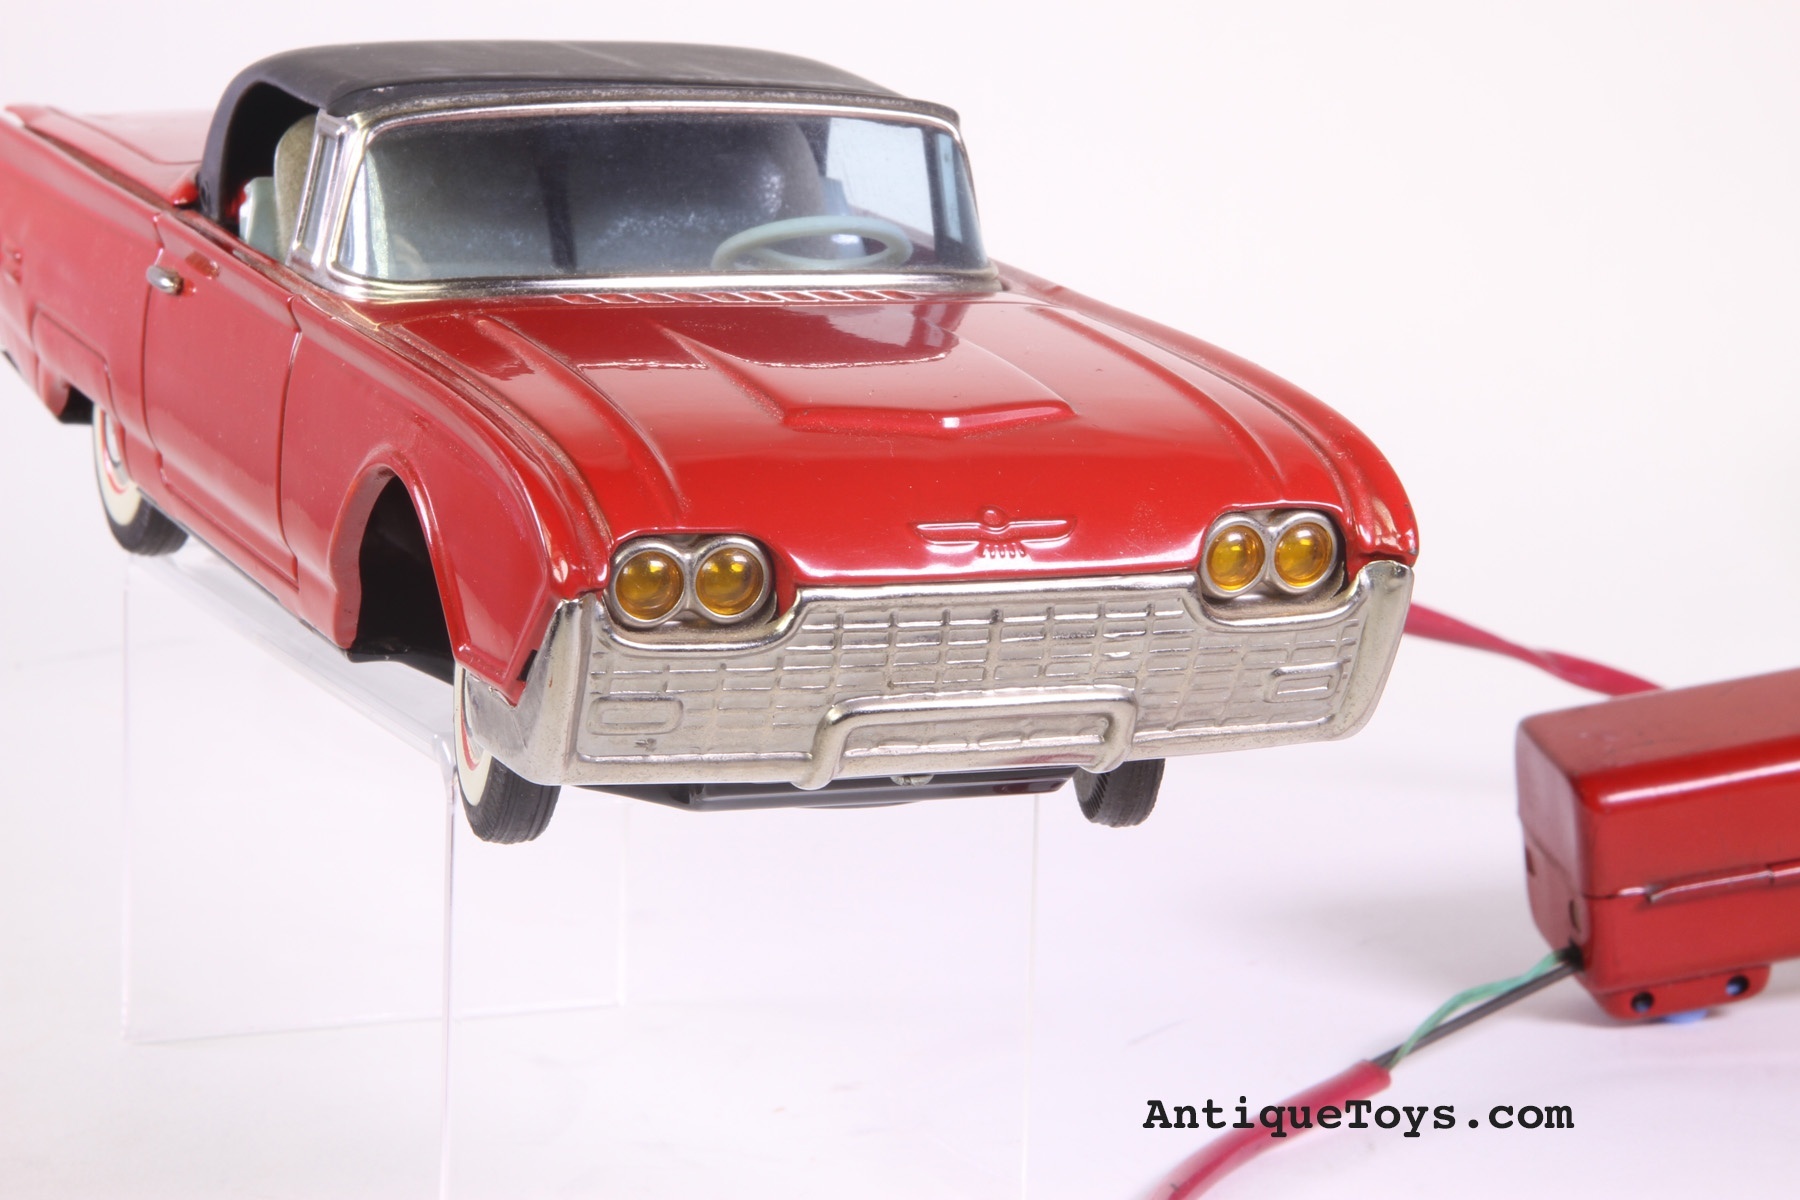 Cragstan Ford Thunderbird Tin Car *SOLD* - AntiqueToys.com